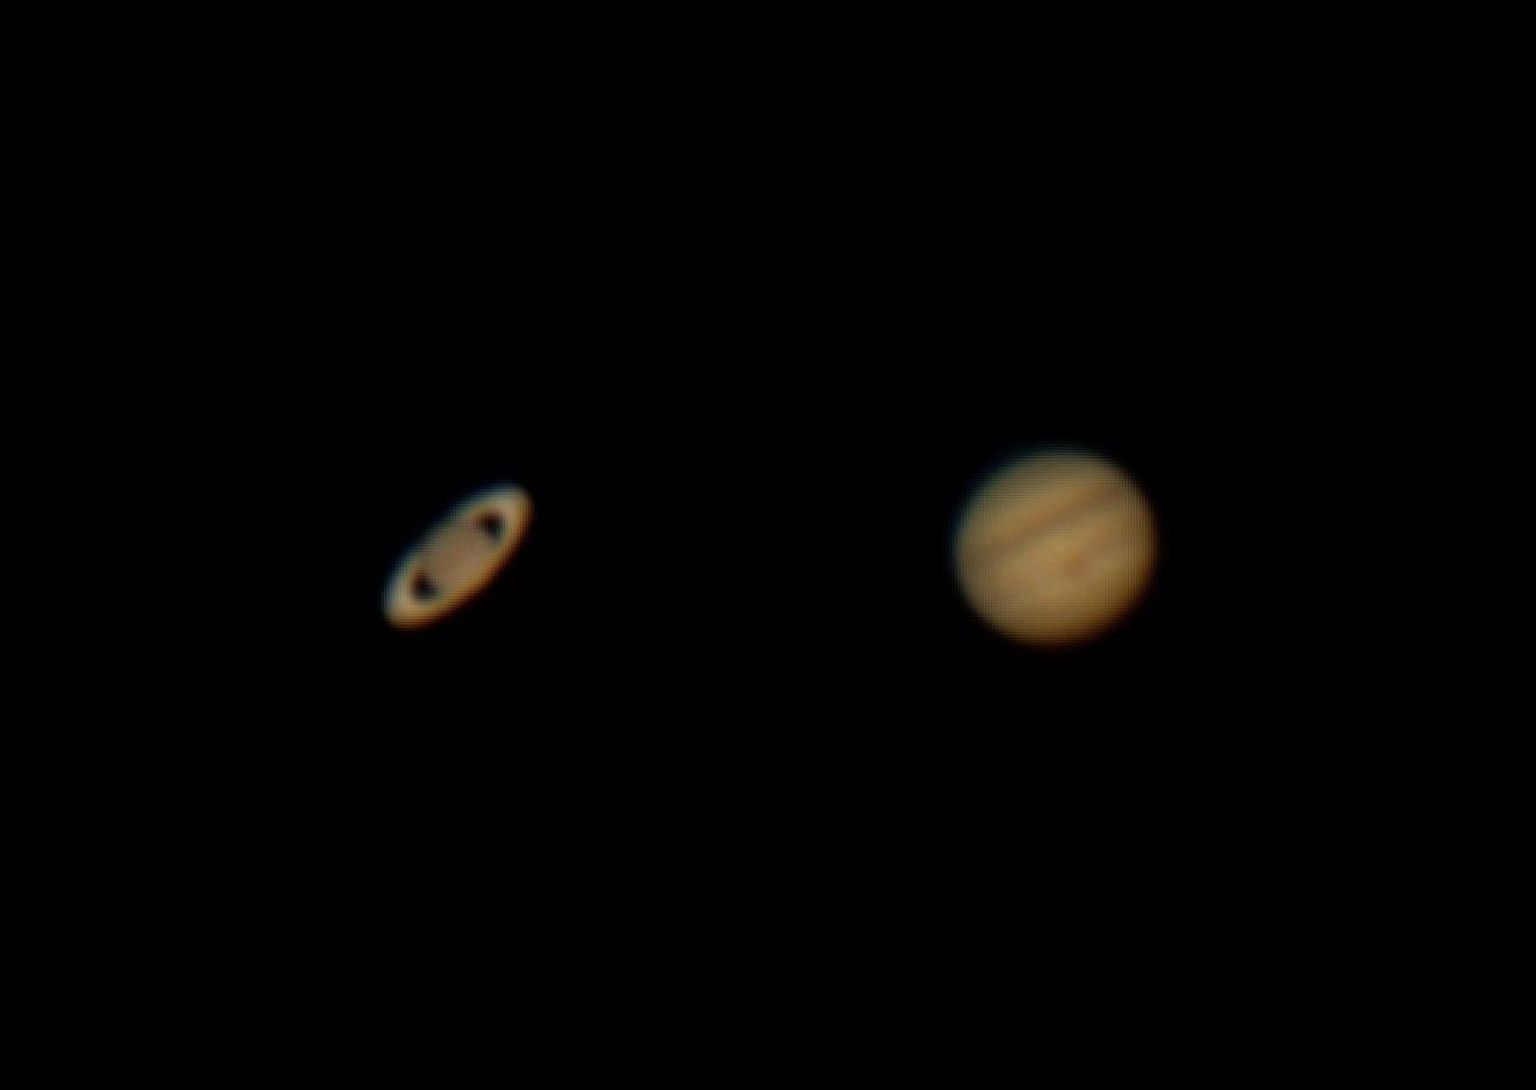 Hiidplaneedid Saturn ja Jupiter läbi Tõrva astronoomiaklubi teleskoobi 21. juulil 2020. Planeetide kujutised on tõstetud ühele fotole kokku. 